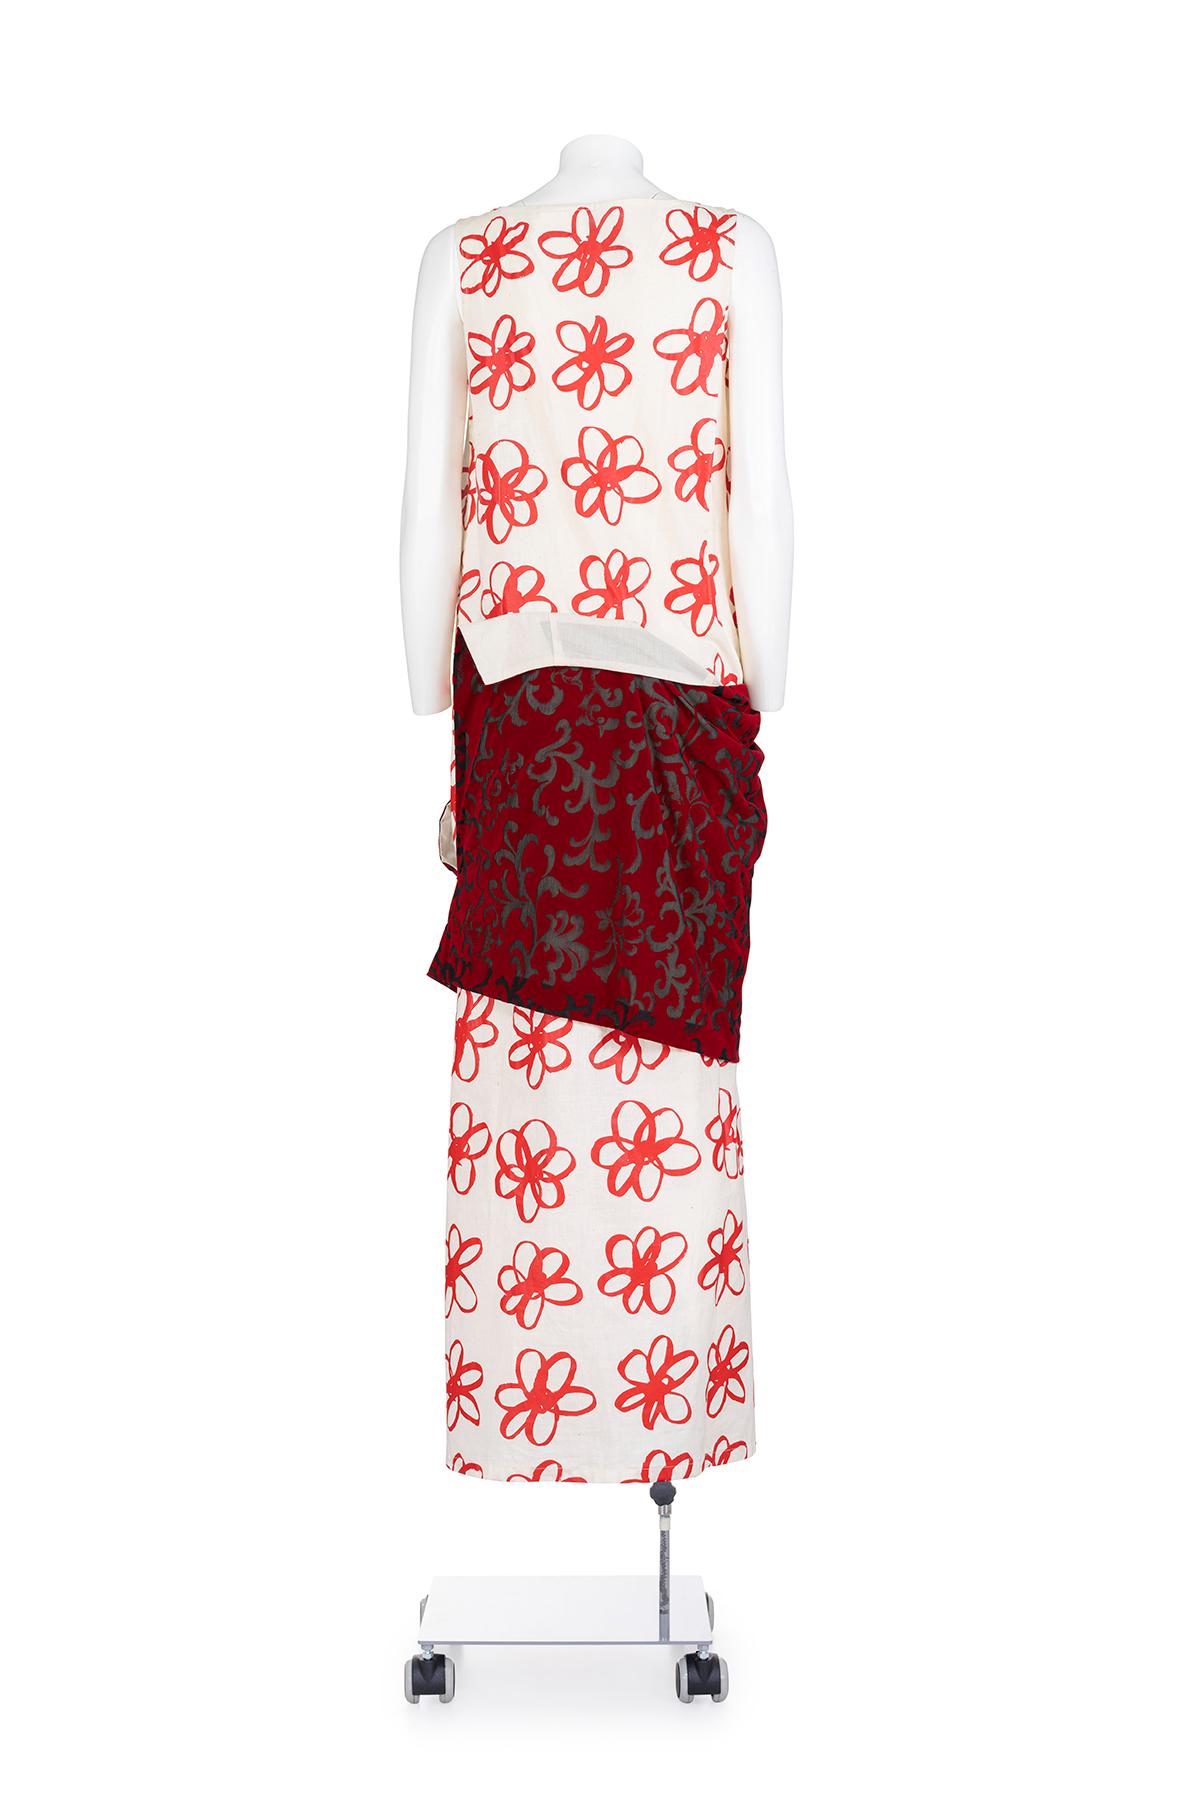 Herbst-Winter 1998 kultiges und seltenes langes Kleid mit Blumenmuster aus Gummi von Comme des Garçons.
V-Ausschnitt. 
Devorè Rock mit Samtapplikation.
Die Zusammensetzung ist 100% Polyester.